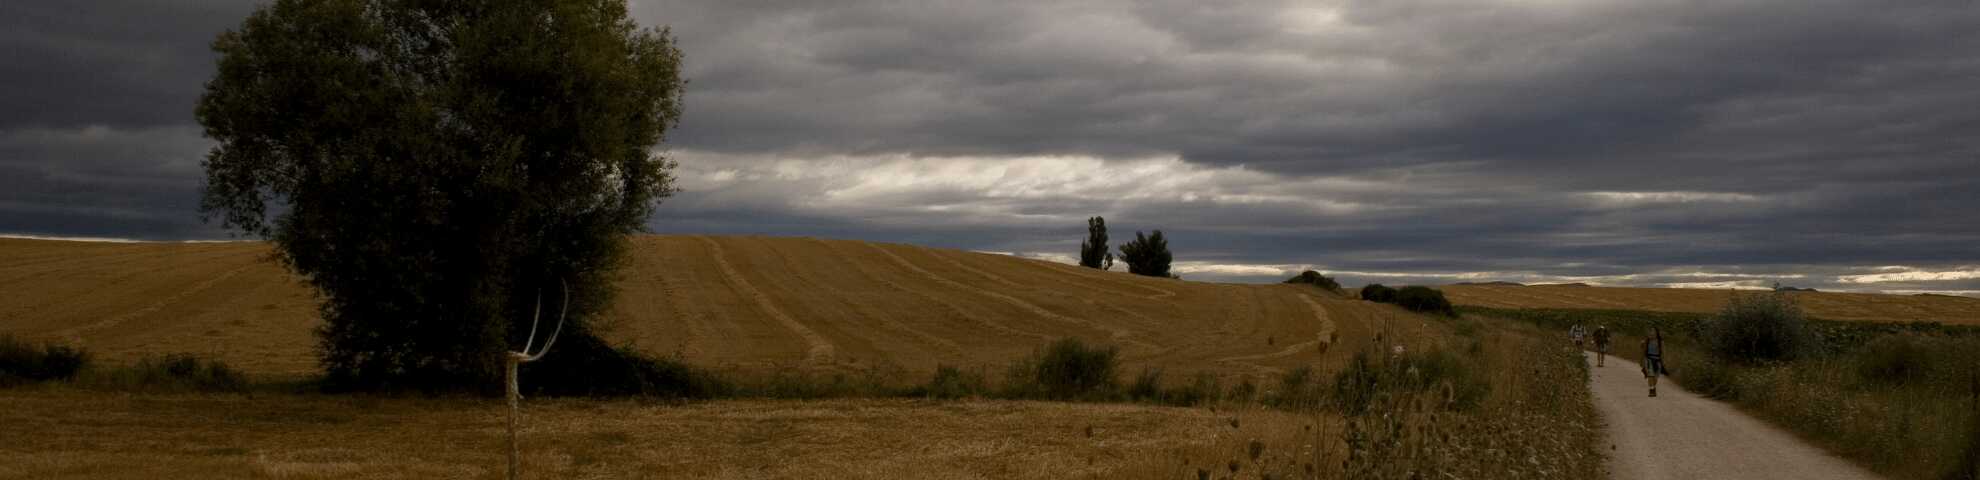 Un roble en medio de un campo de trigo